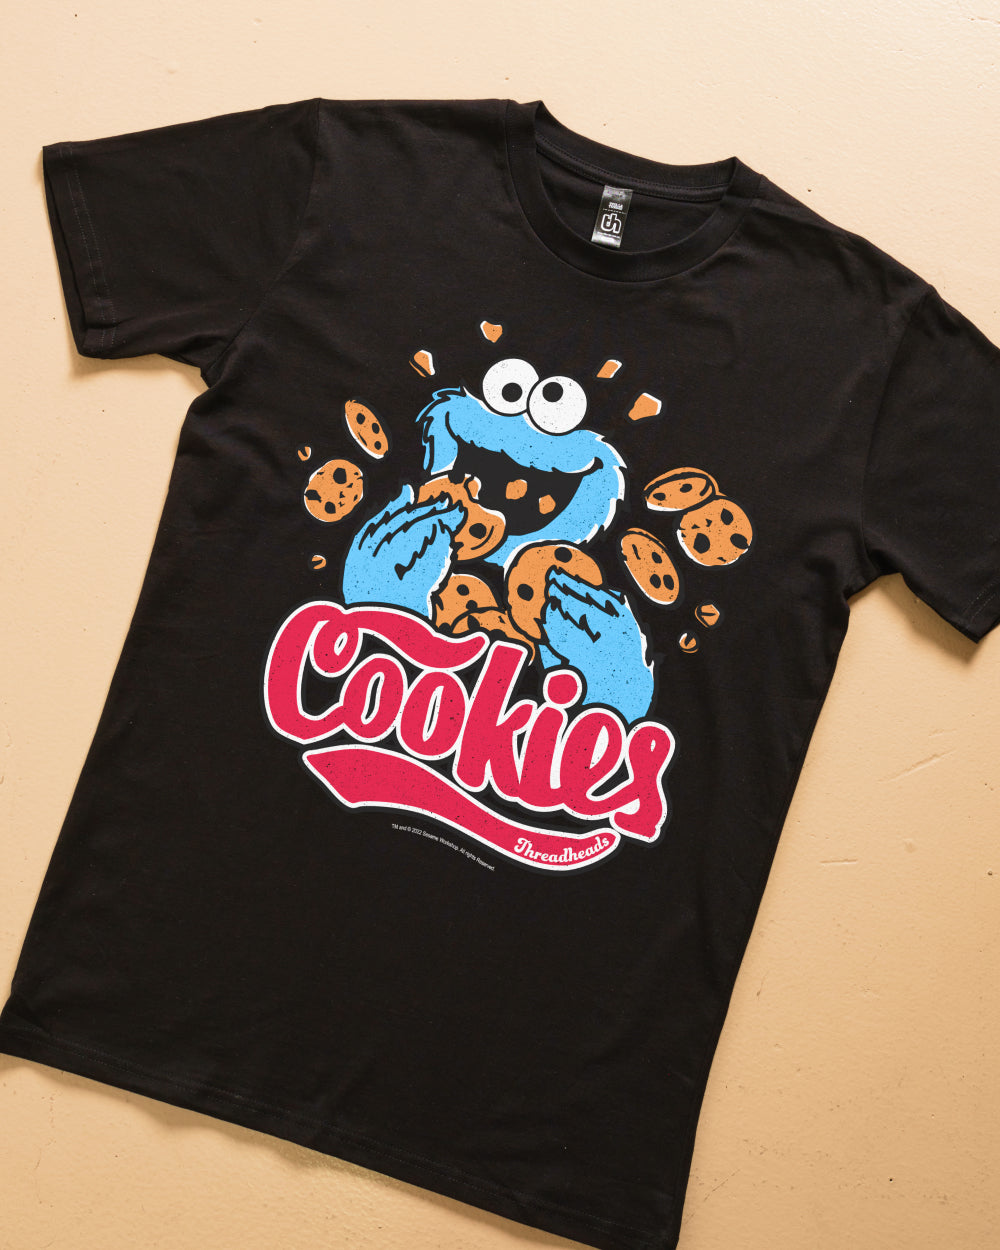 Cookie Monster Cookies T-Shirt Australia Online #colour_black